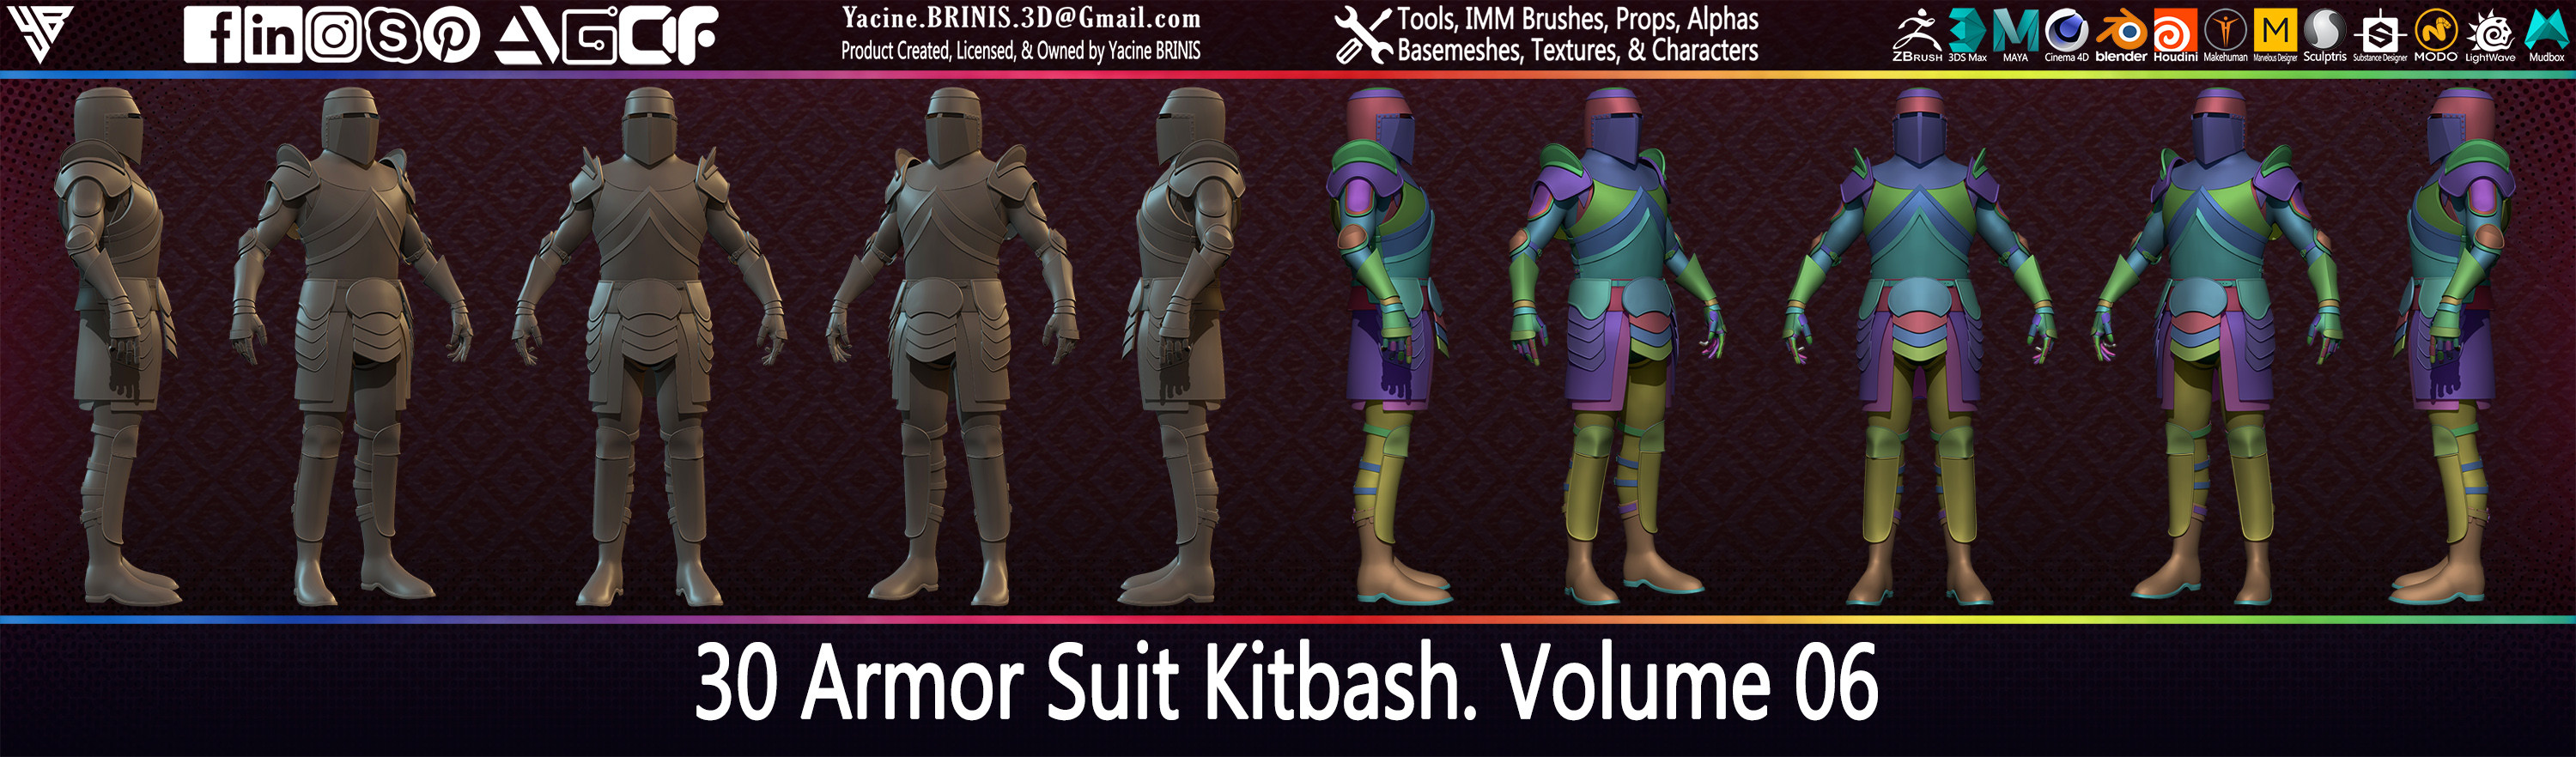 30 Armor Suit Kitbash By Yacine BRINIS Set 042